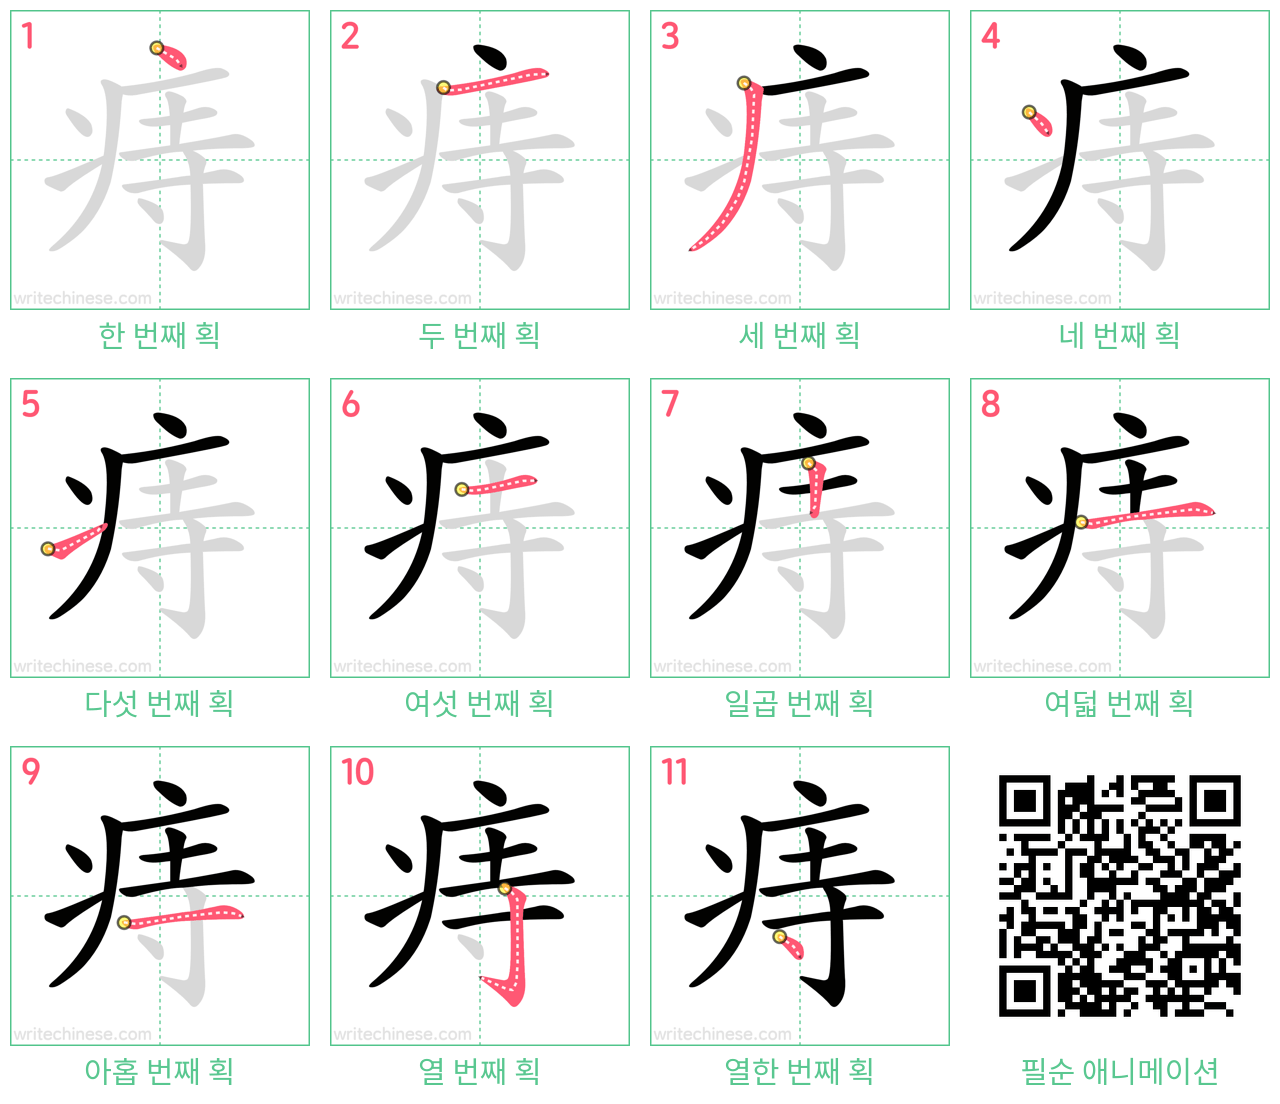 痔 step-by-step stroke order diagrams